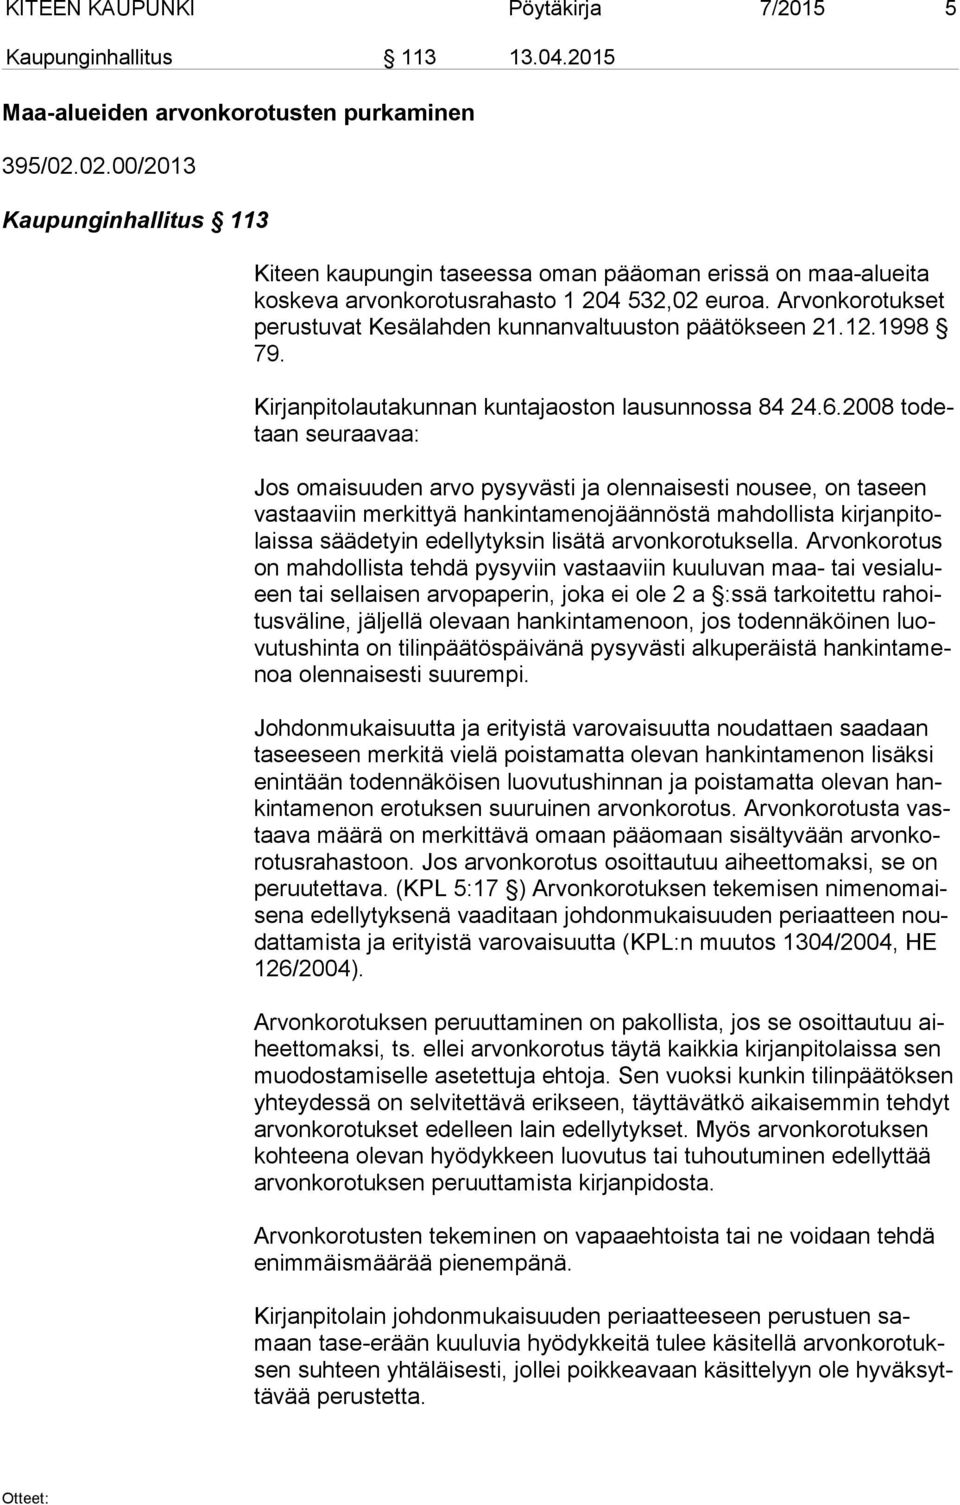 Arvonkorotukset pe rus tu vat Kesälahden kunnanvaltuuston päätökseen 21.12.1998 79. Kirjanpitolautakunnan kuntajaoston lausunnossa 84 24.6.